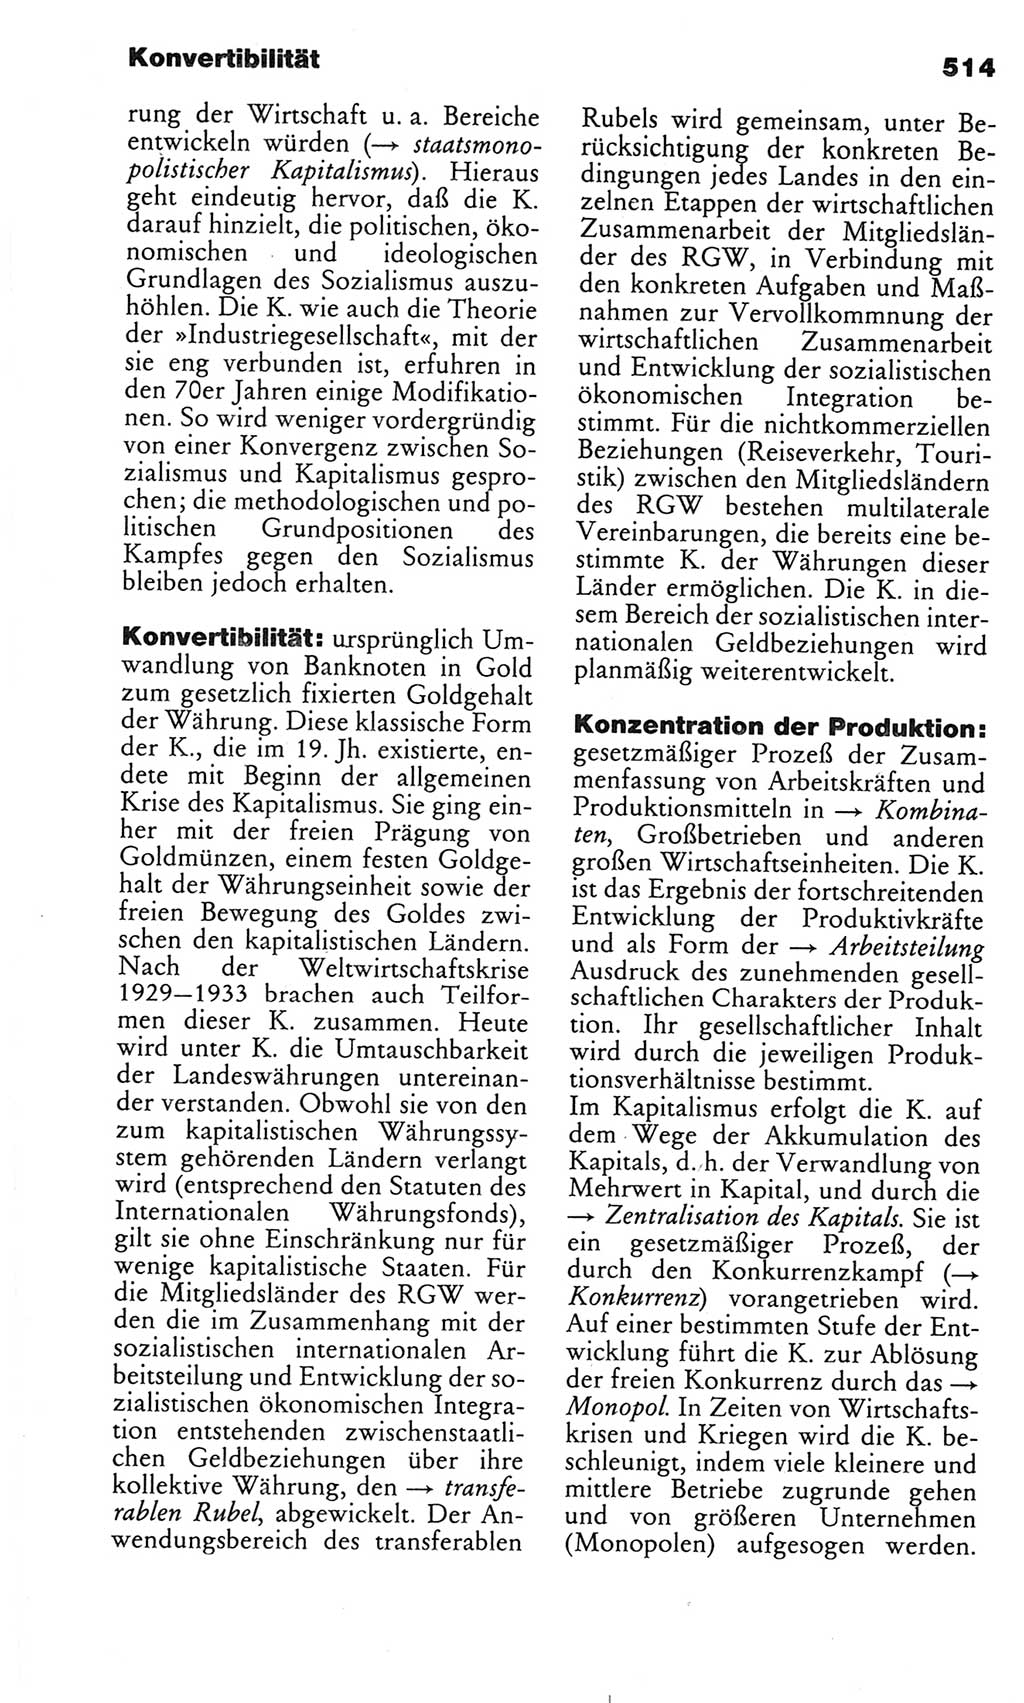 Kleines politisches Wörterbuch [Deutsche Demokratische Republik (DDR)] 1986, Seite 514 (Kl. pol. Wb. DDR 1986, S. 514)